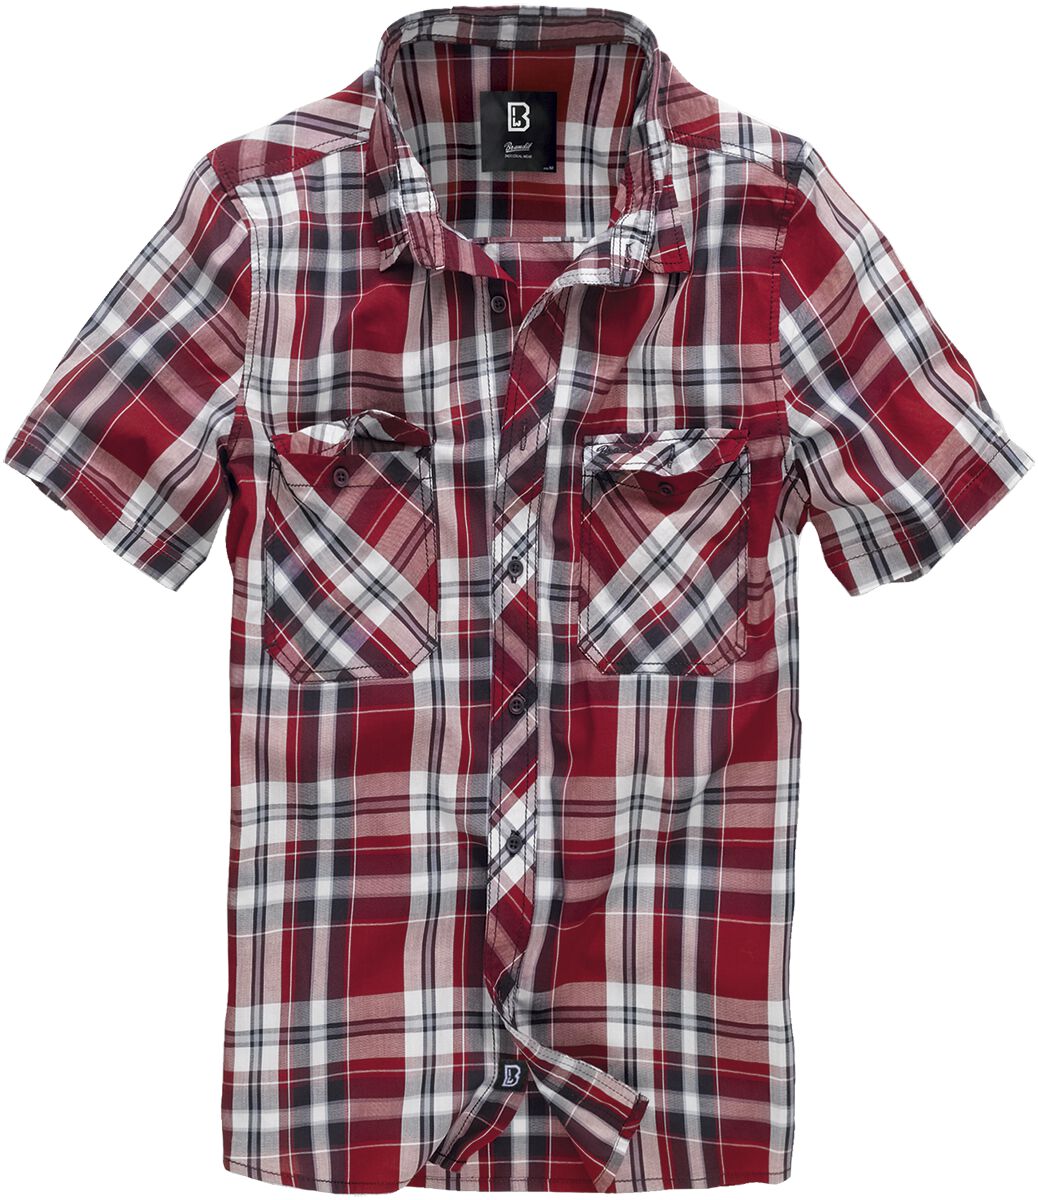 Chemise manches courtes de Brandit - Roadstar - L à 3XL - pour Homme - rouge/noir/blanc